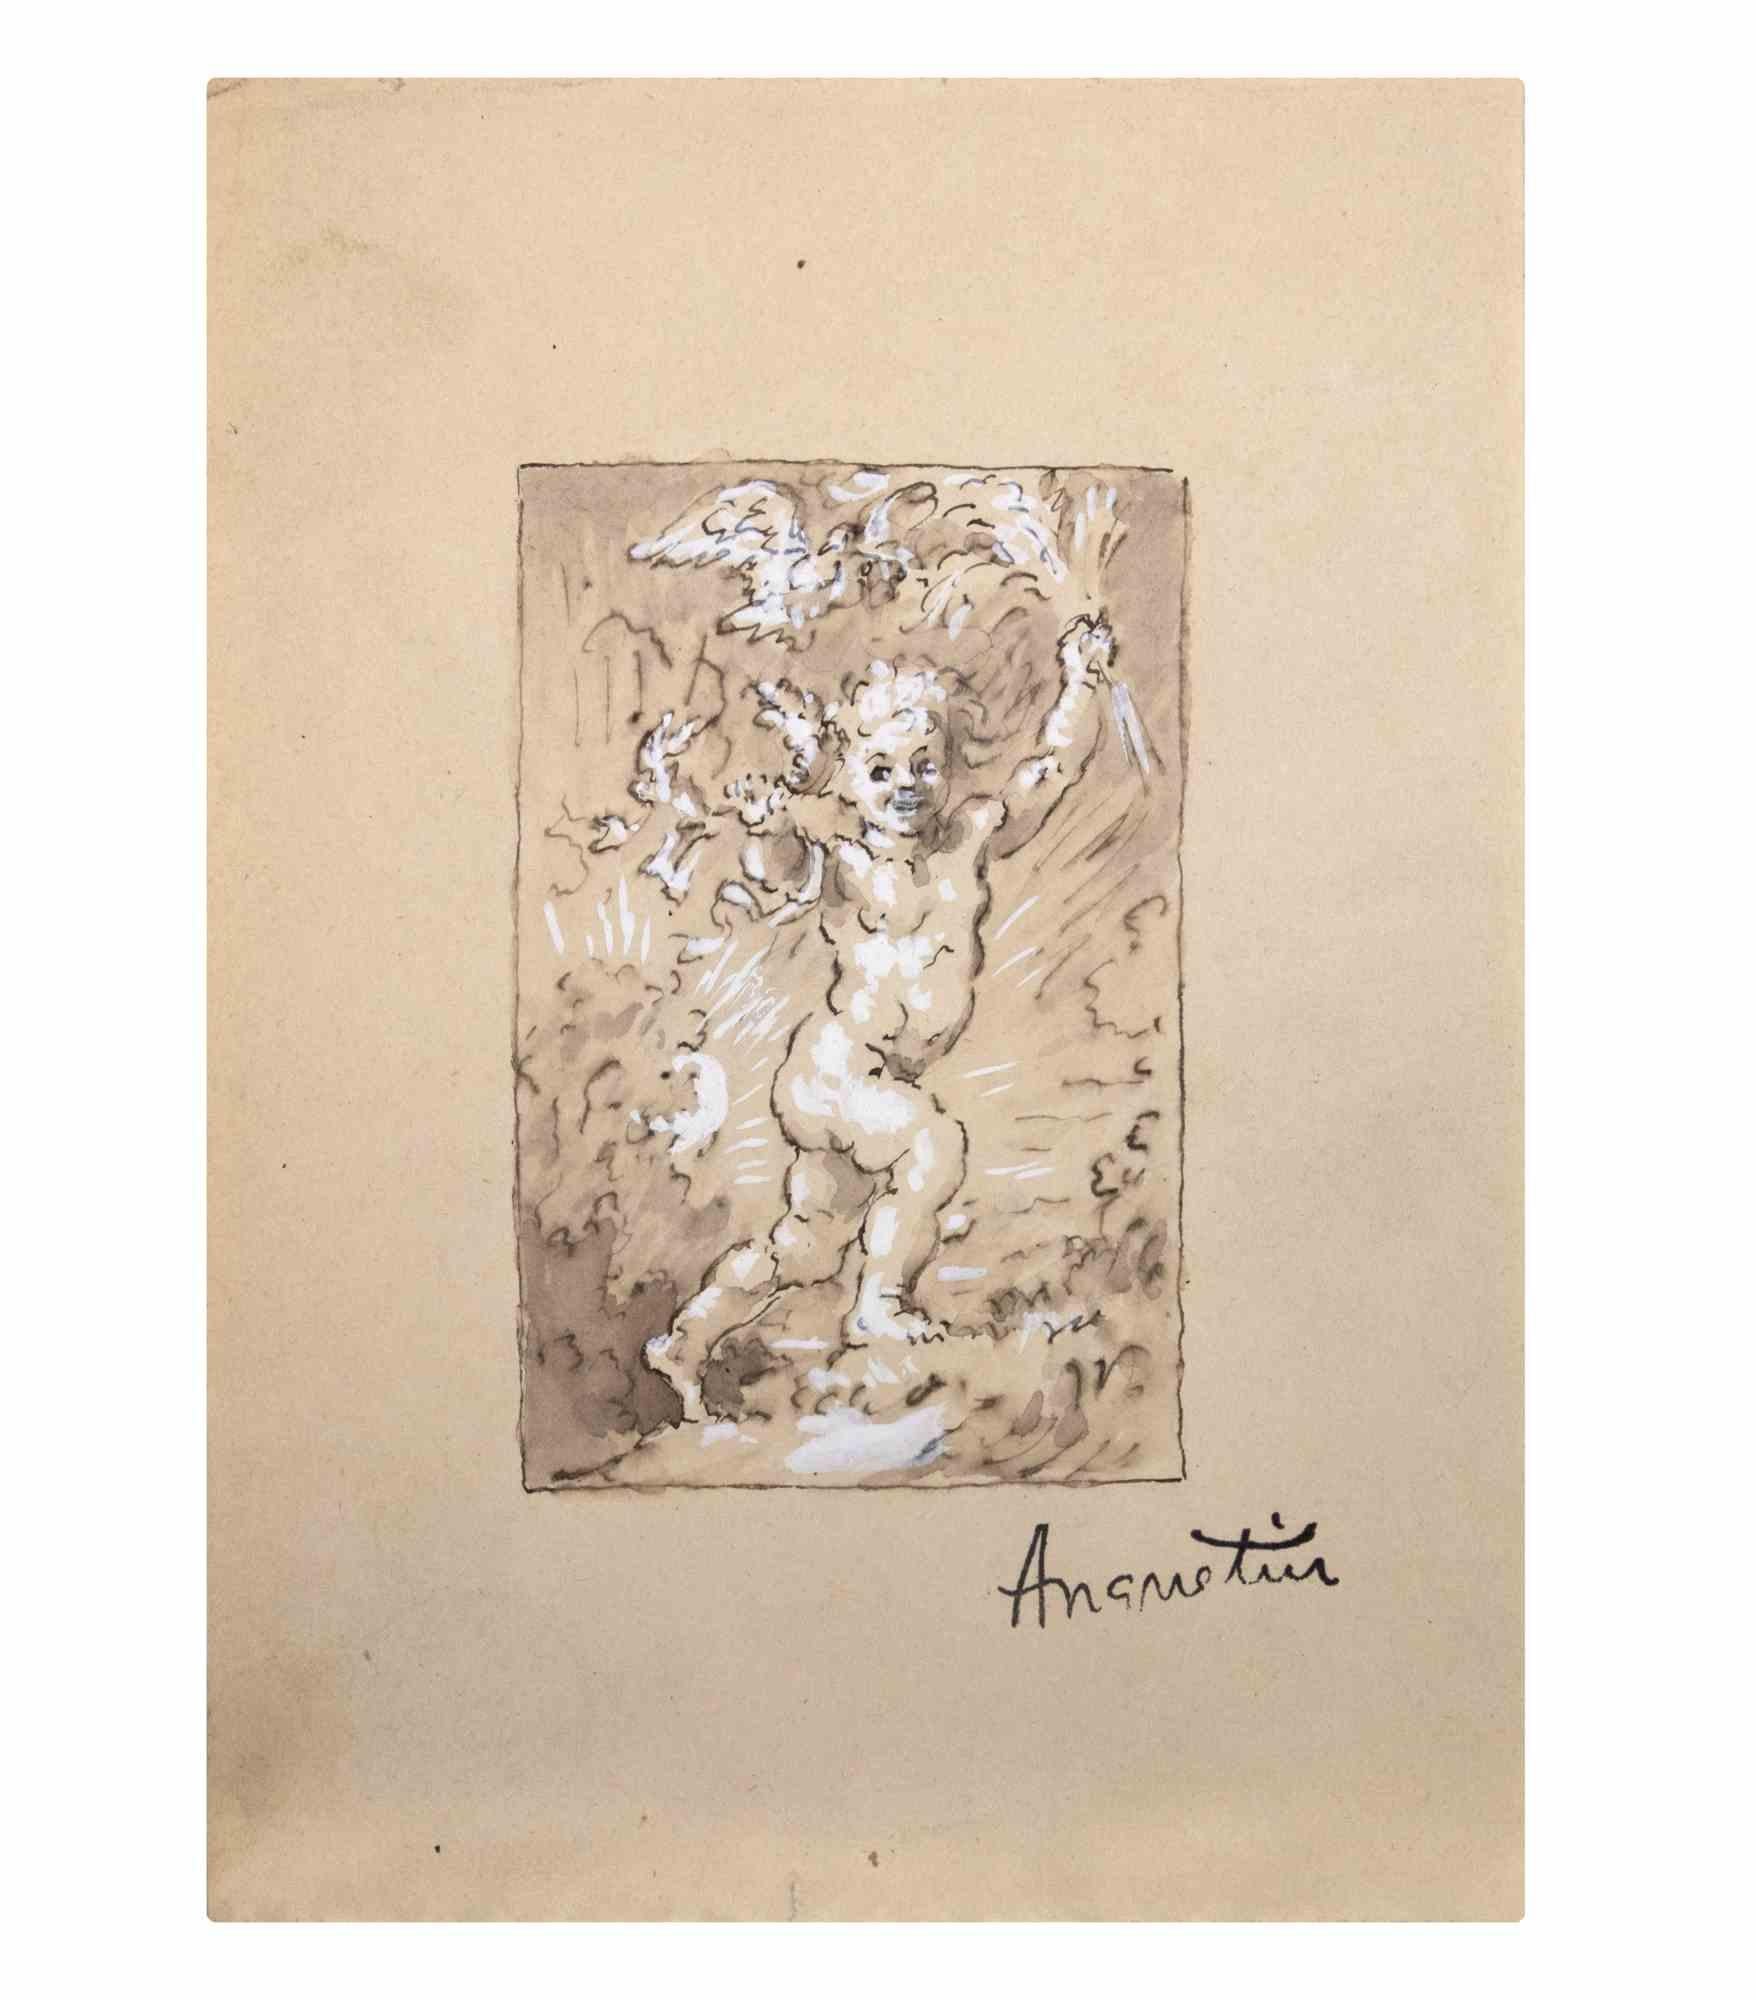 Der Engel ist eine Zeichnung, die Anfang des 20. Jahrhunderts von Louis Anquetin (1861-1932) angefertigt wurde.

Tusche, Aquarell und Bleiweiß auf Papier.

Handsigniert auf der Unterseite.

Guter Zustand mit leichten Stockflecken.